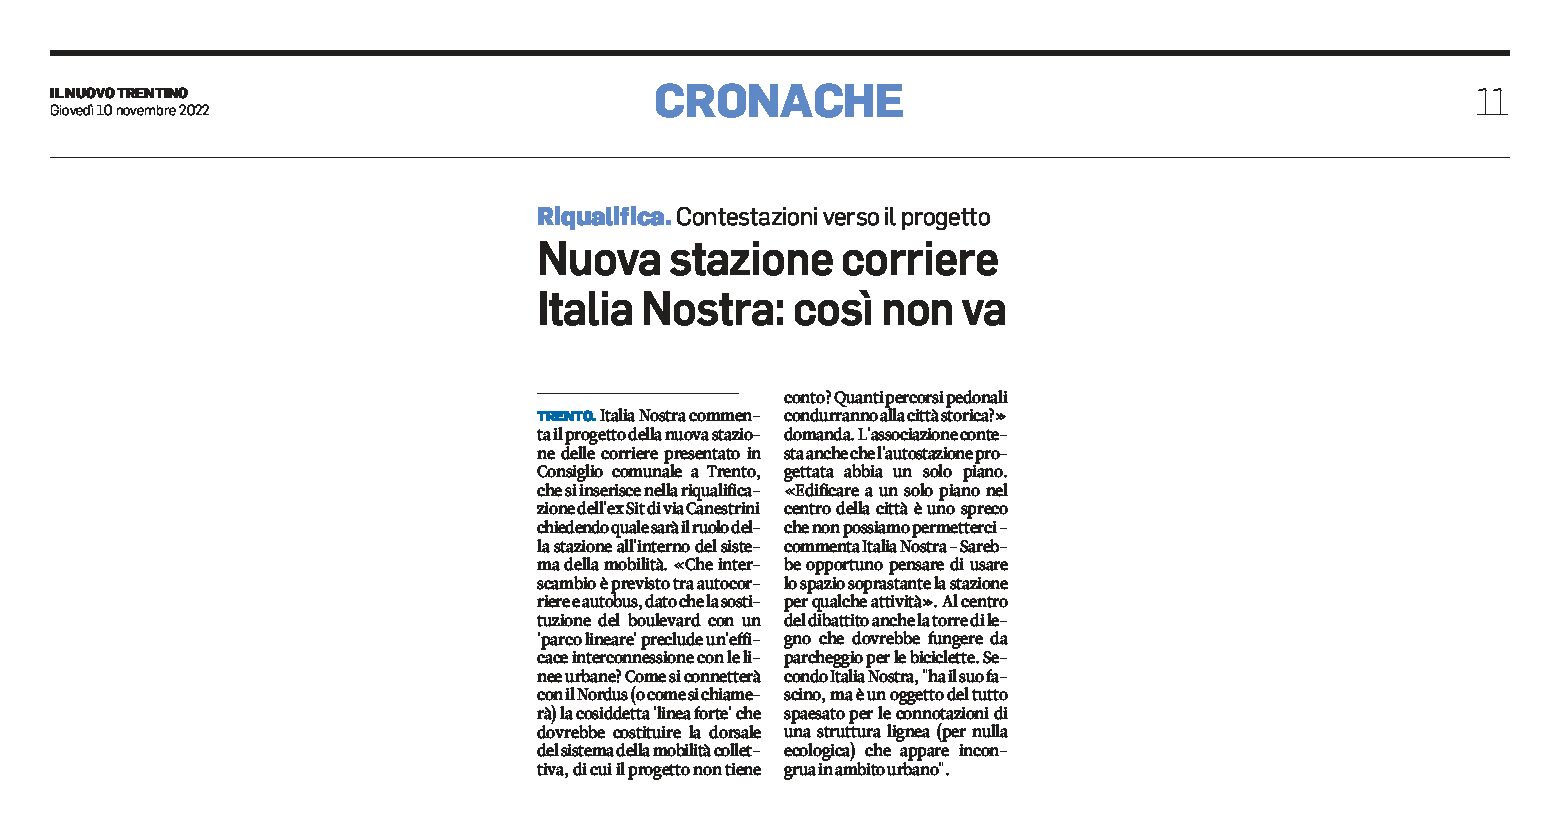 Trento, nuova stazione corriere: Italia Nostra contesta il progetto